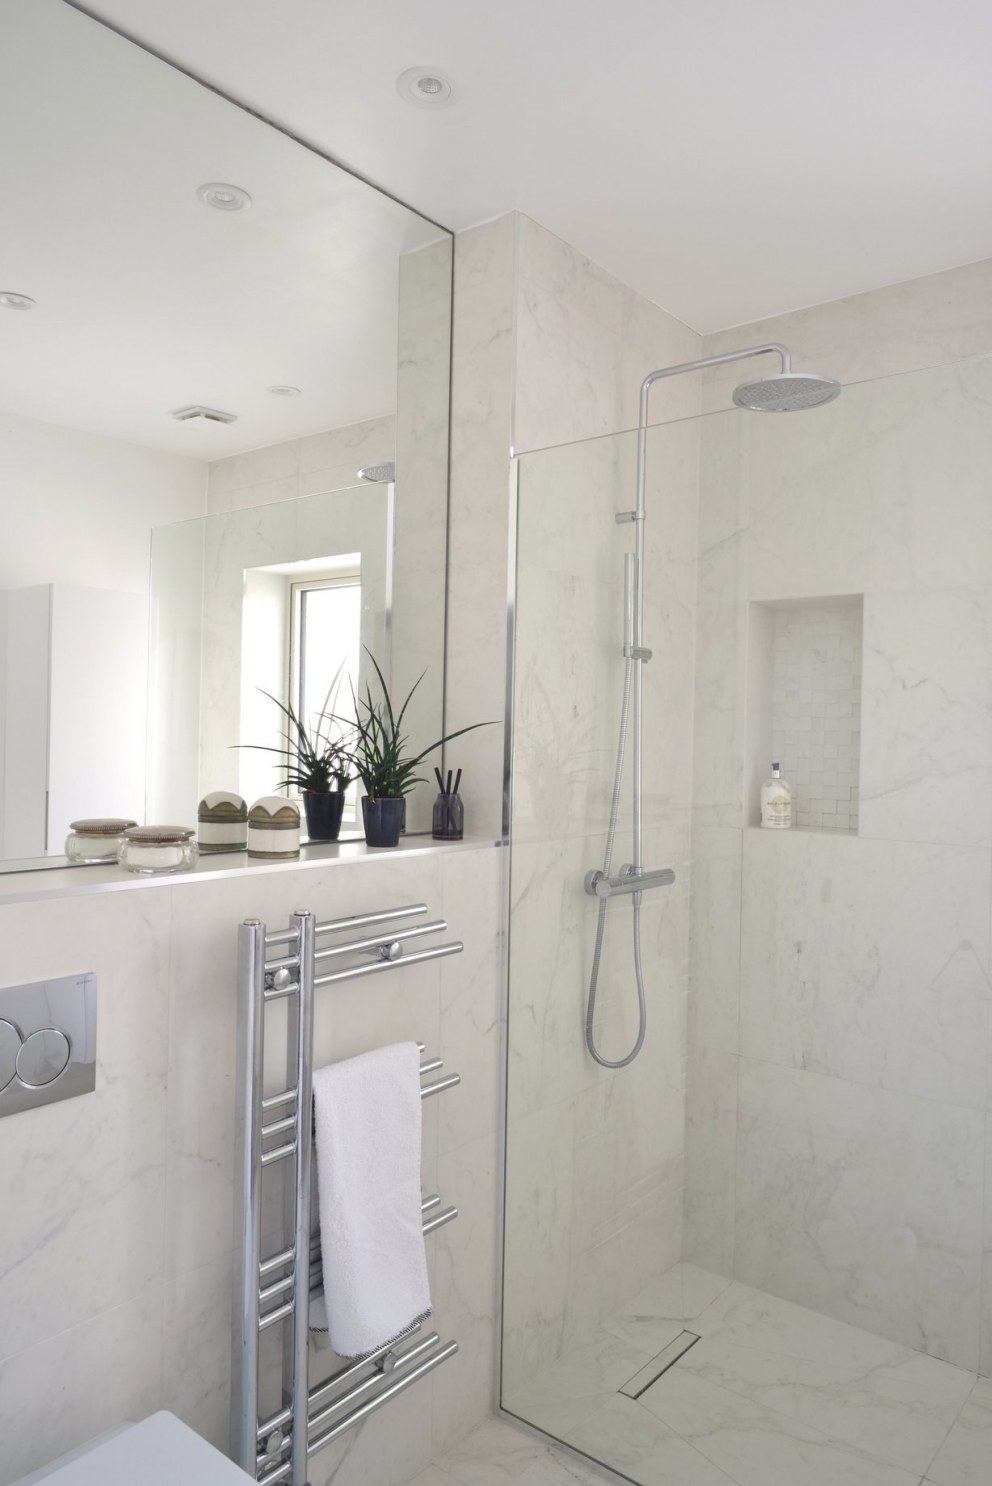 New Malden, bedrooms | Master En-suite shower room | Interior Designers